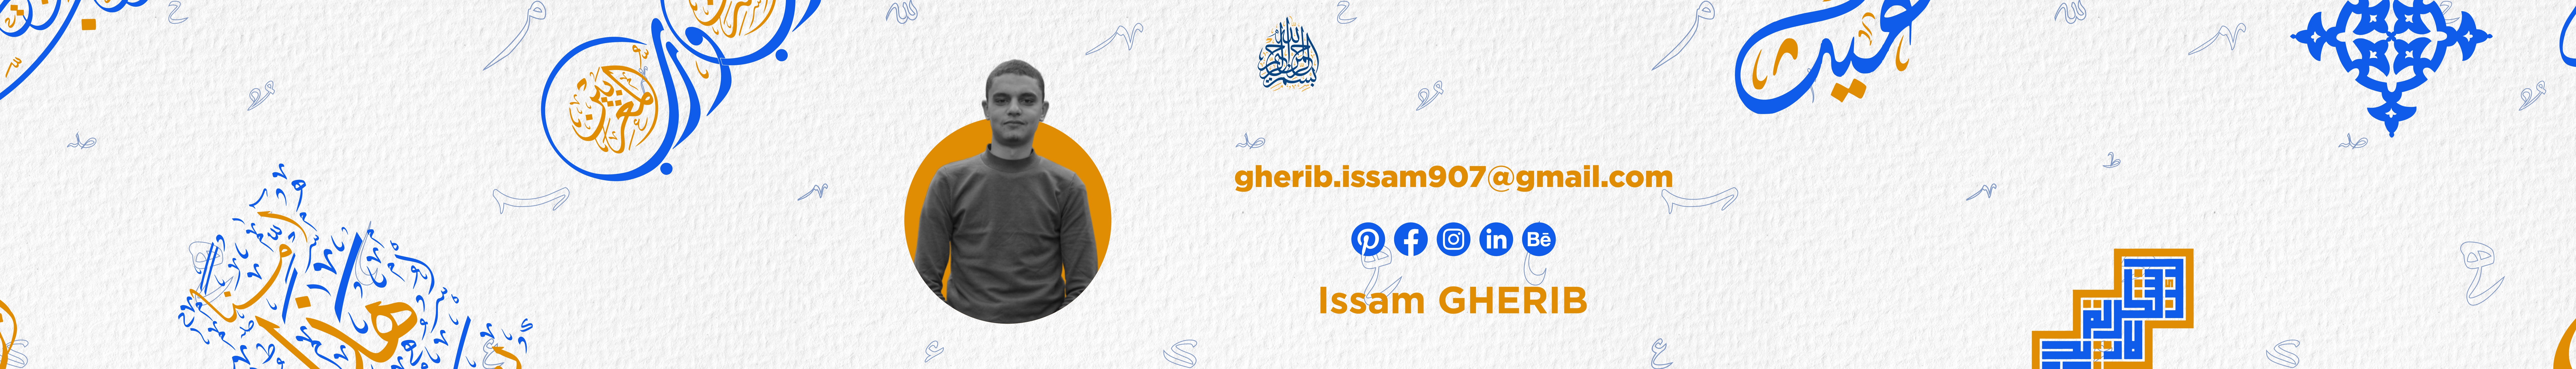 Issam GHERIB's profile banner